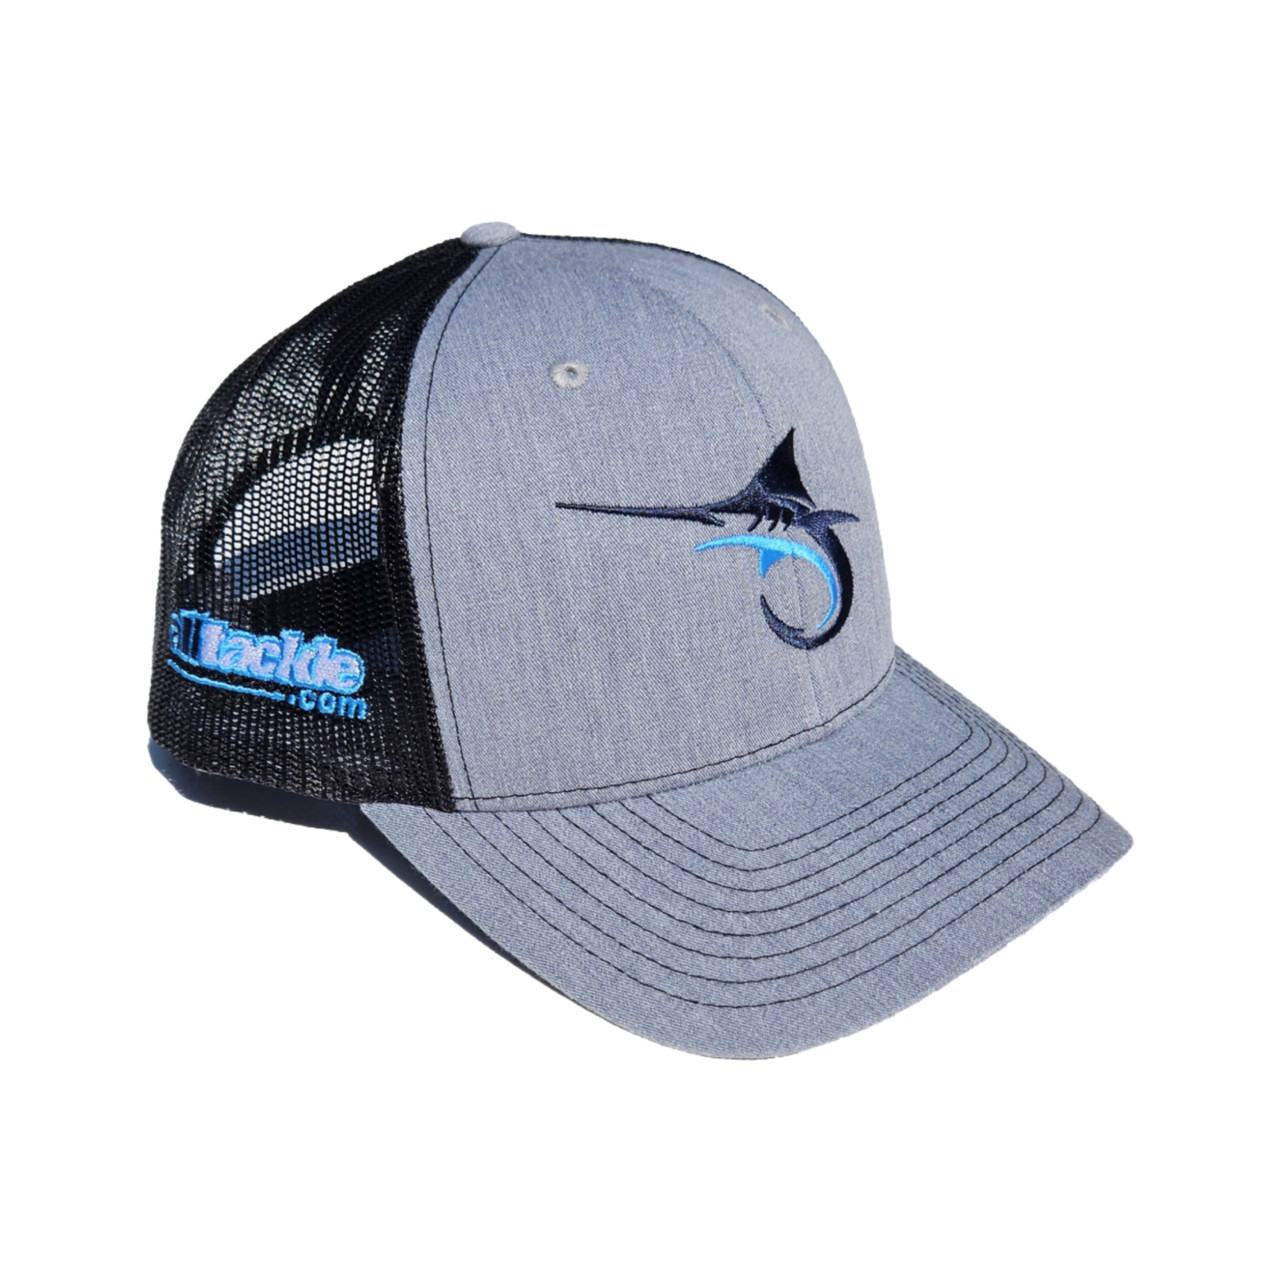 Alltackle Fishing Hat - Marlin Hook - Gray/Black 